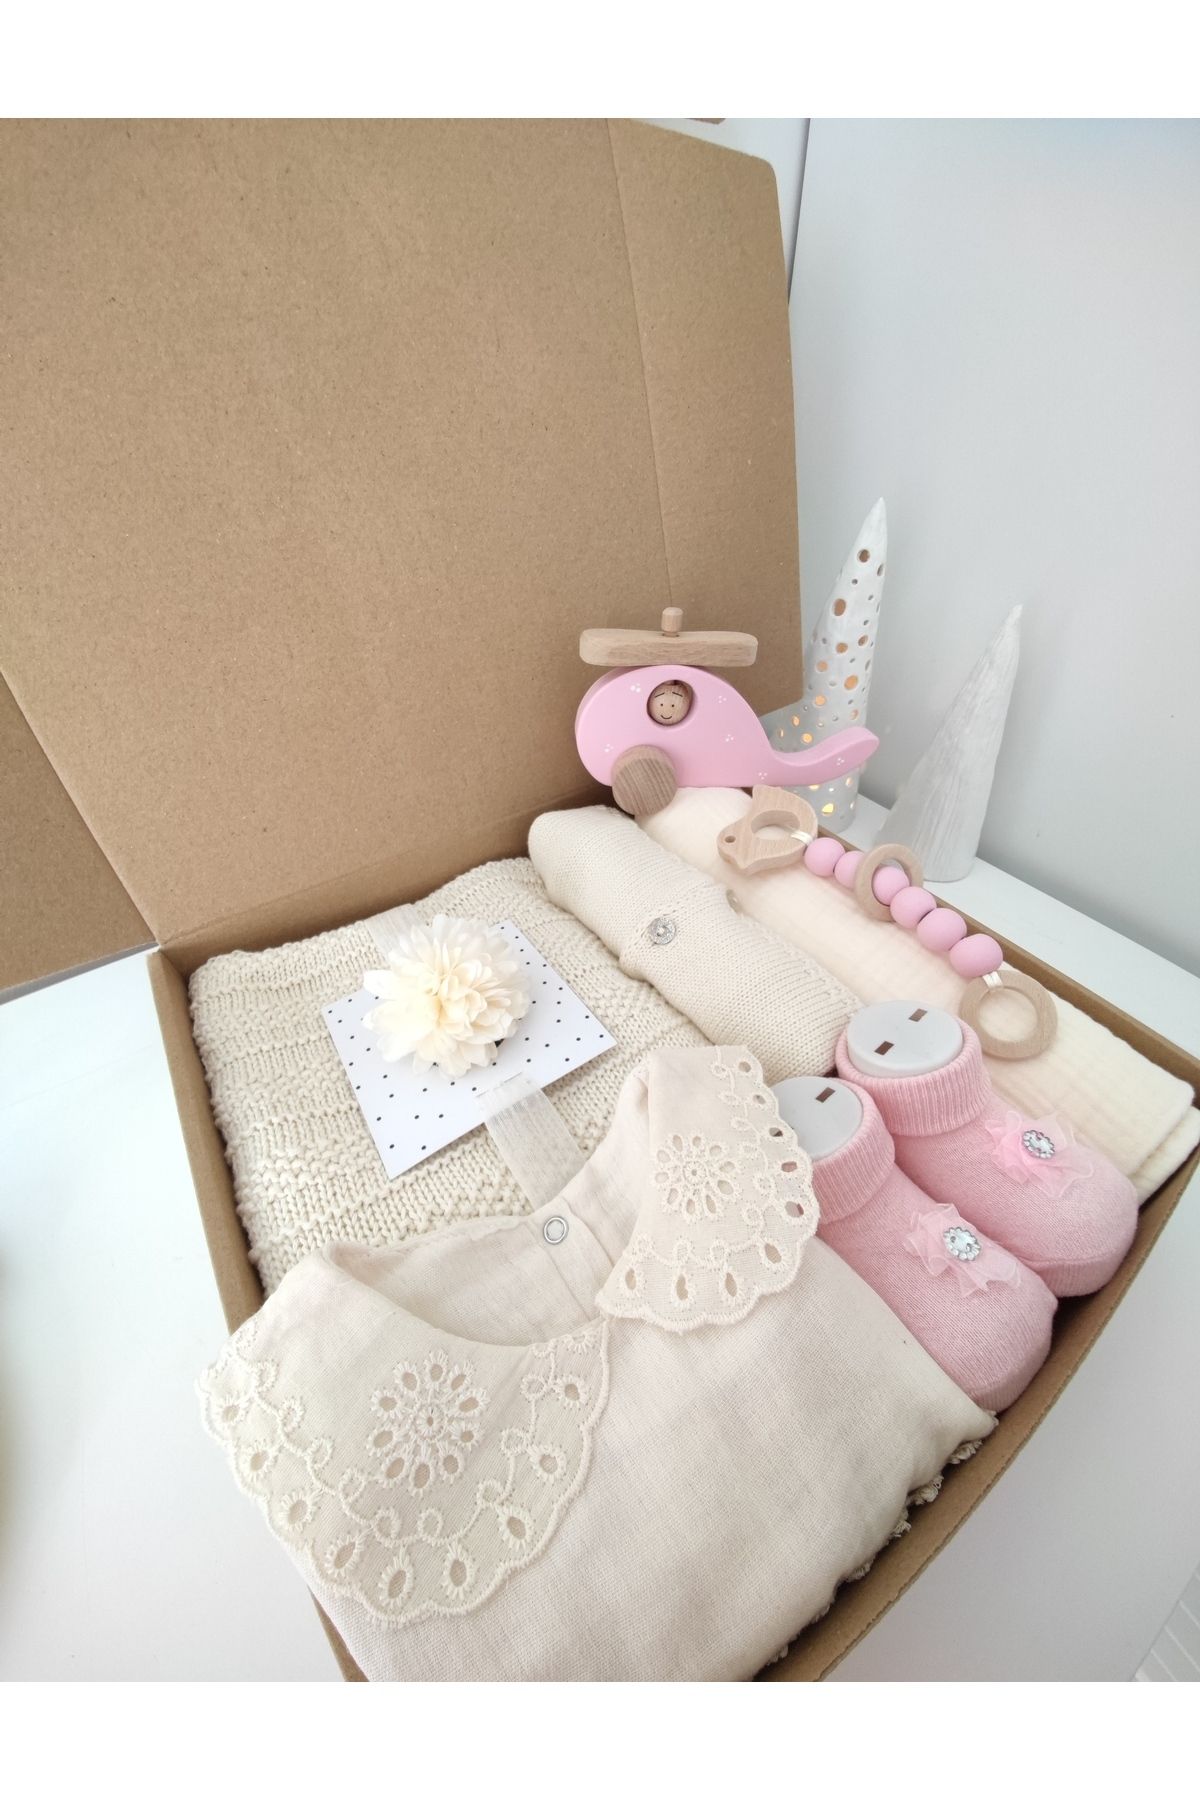 Sincabın Düşleri Hoşgeldin bebek yenidoğan bebek hediye kutusu triko battaniye müslin örtü tulum örgü